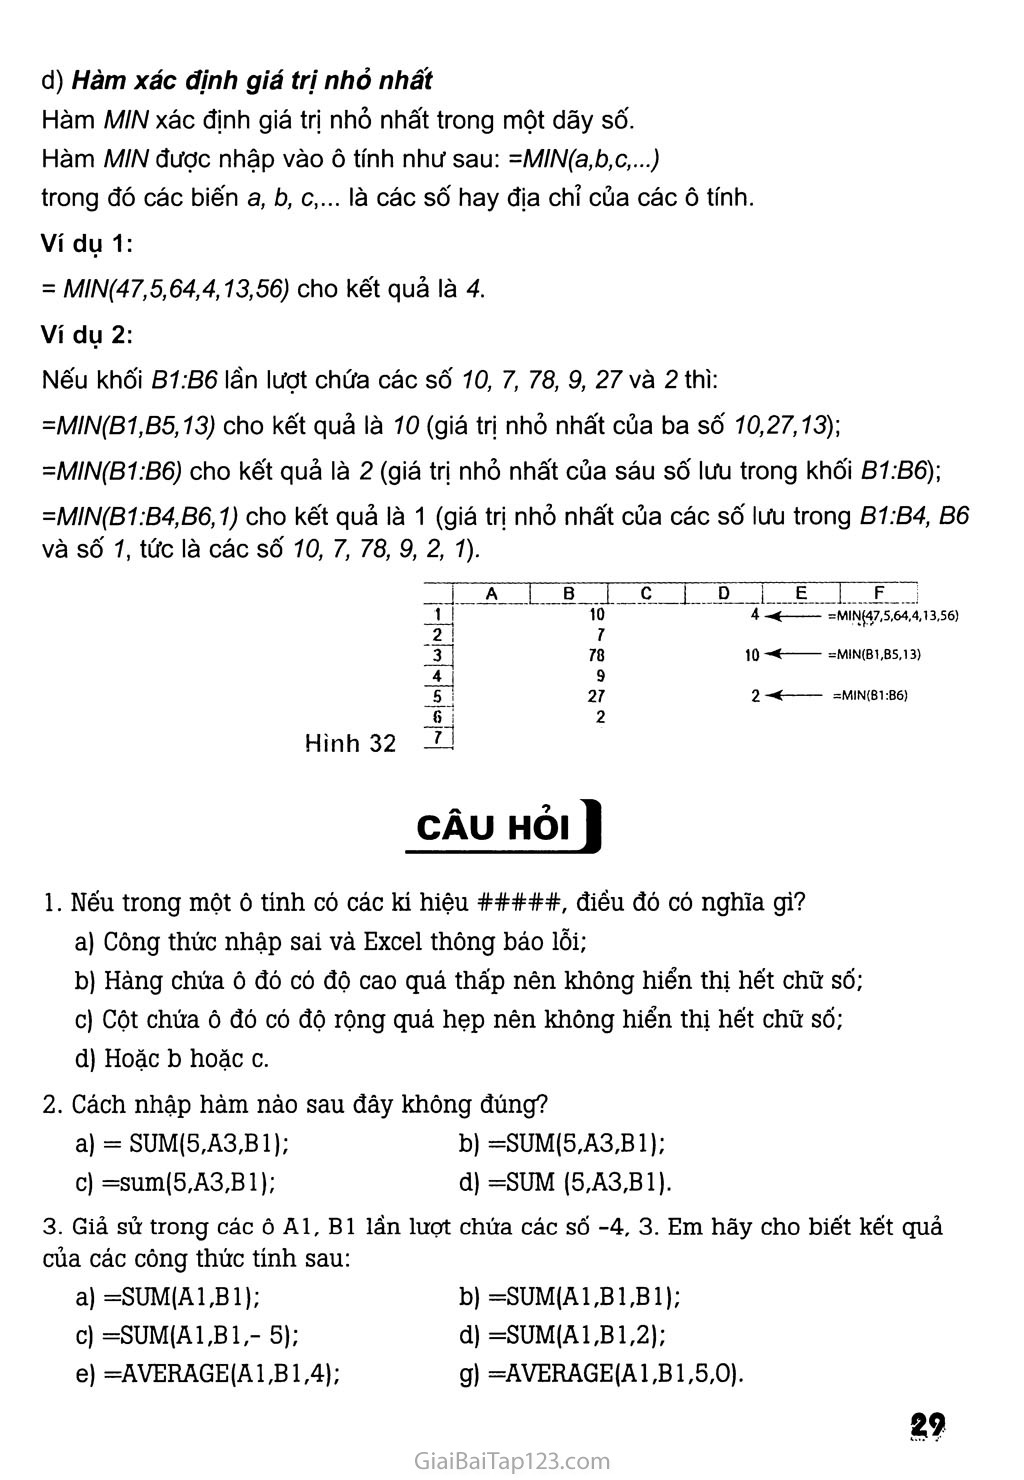 Bài 4. Sử dụng các hàm để tính toán trang 4